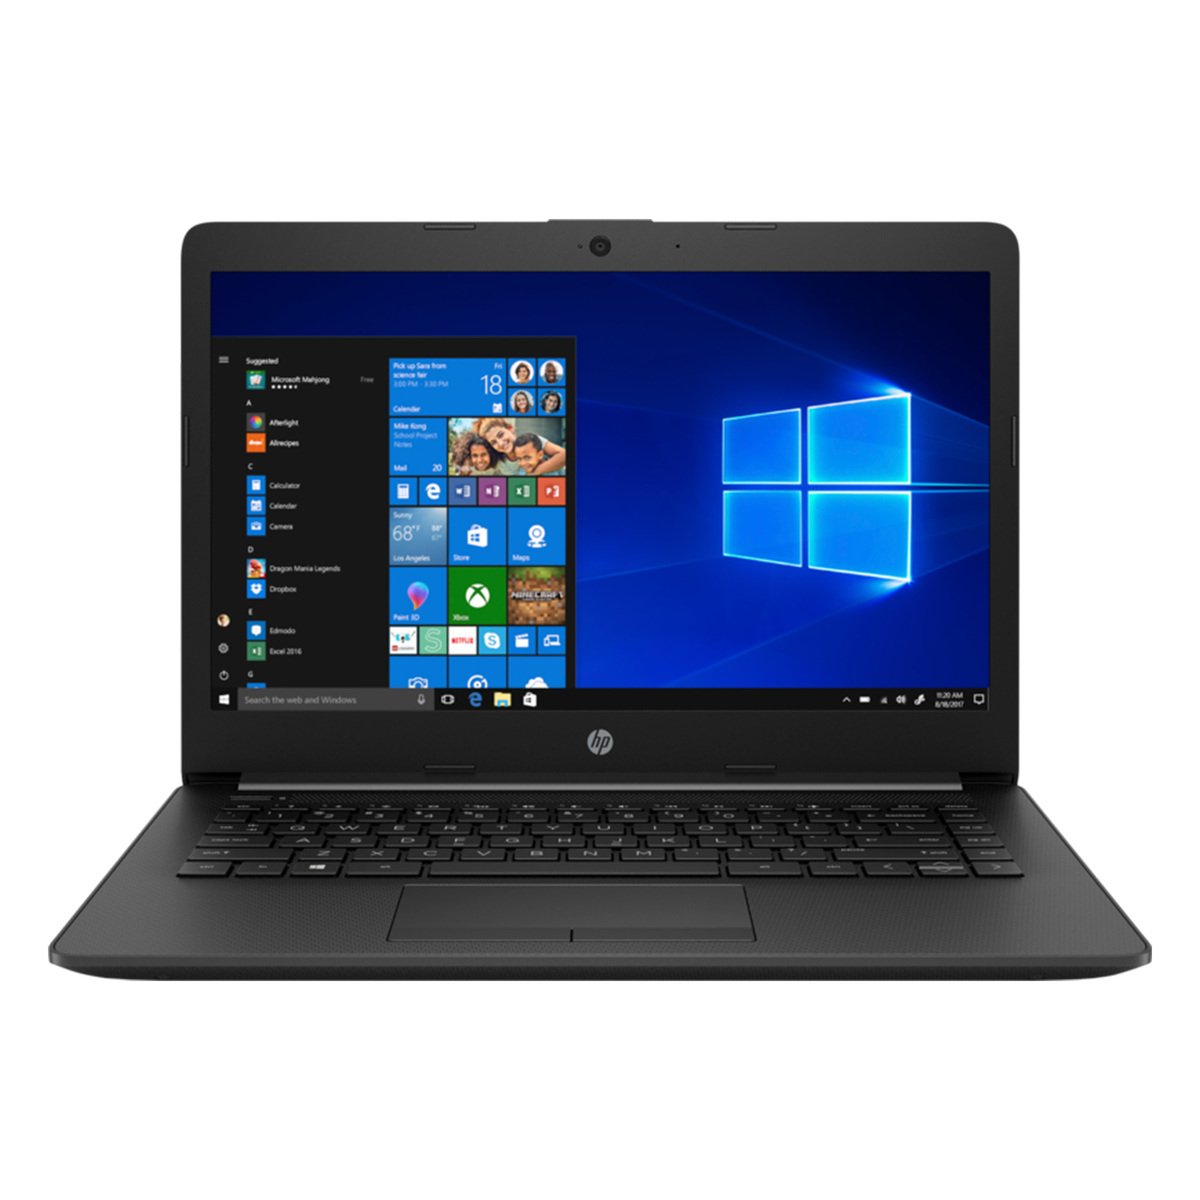 HP Notebook 15-DW3005NX Intel Core i7, 8GB RAM, 512GB SSD, 15.6 inch, 2GB NVIDIA GeForce MX450, Windows 10, Black